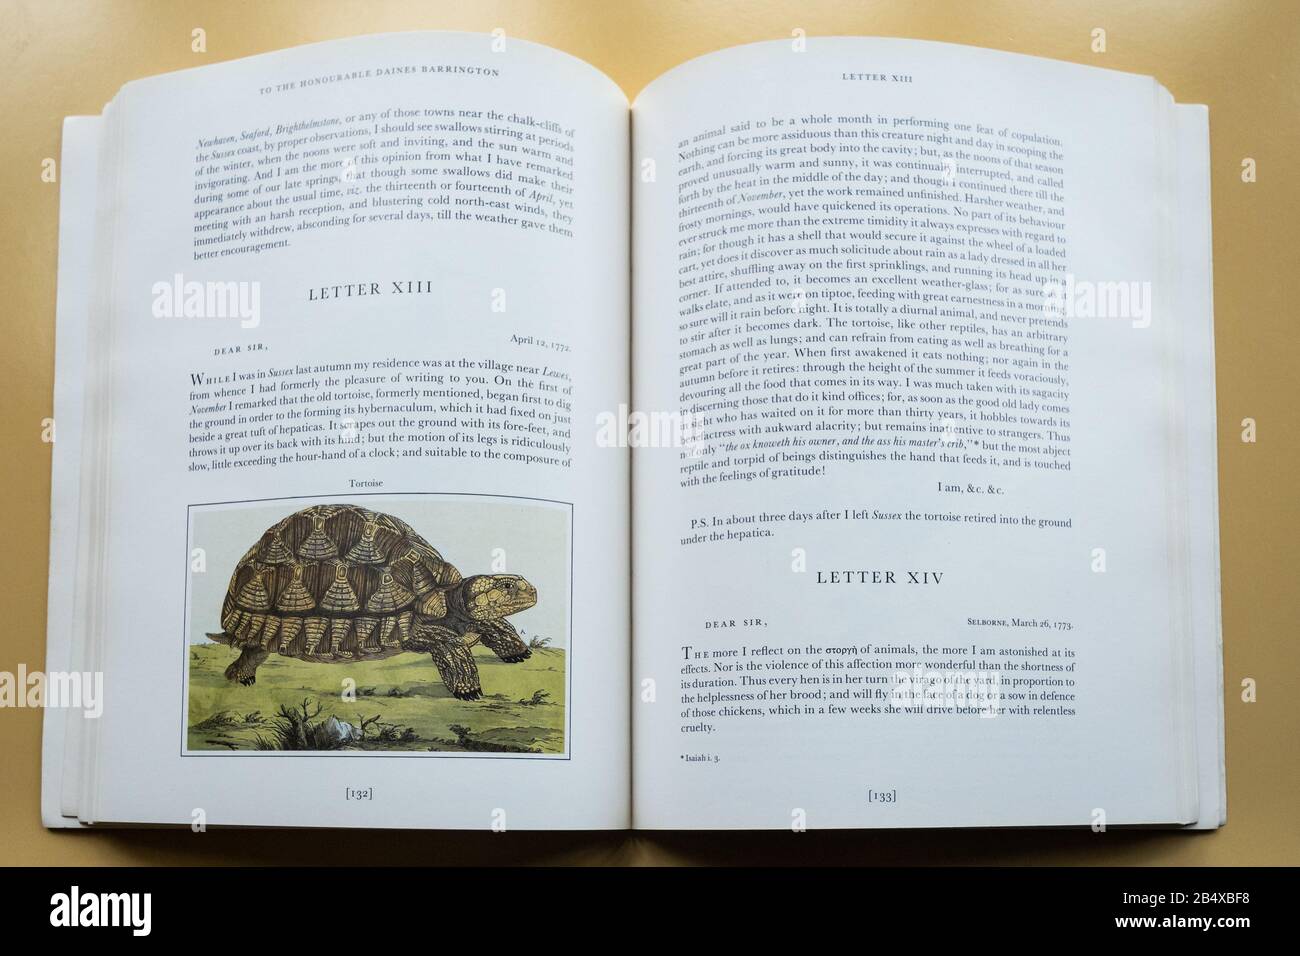 Die Illustrierte Naturgeschichte von Selborne, ein berühmtes Buch des britischen Naturforschers Gilbert White aus dem 18. Jahrhundert, öffnete die Zeichnung einer Schildkröte Stockfoto